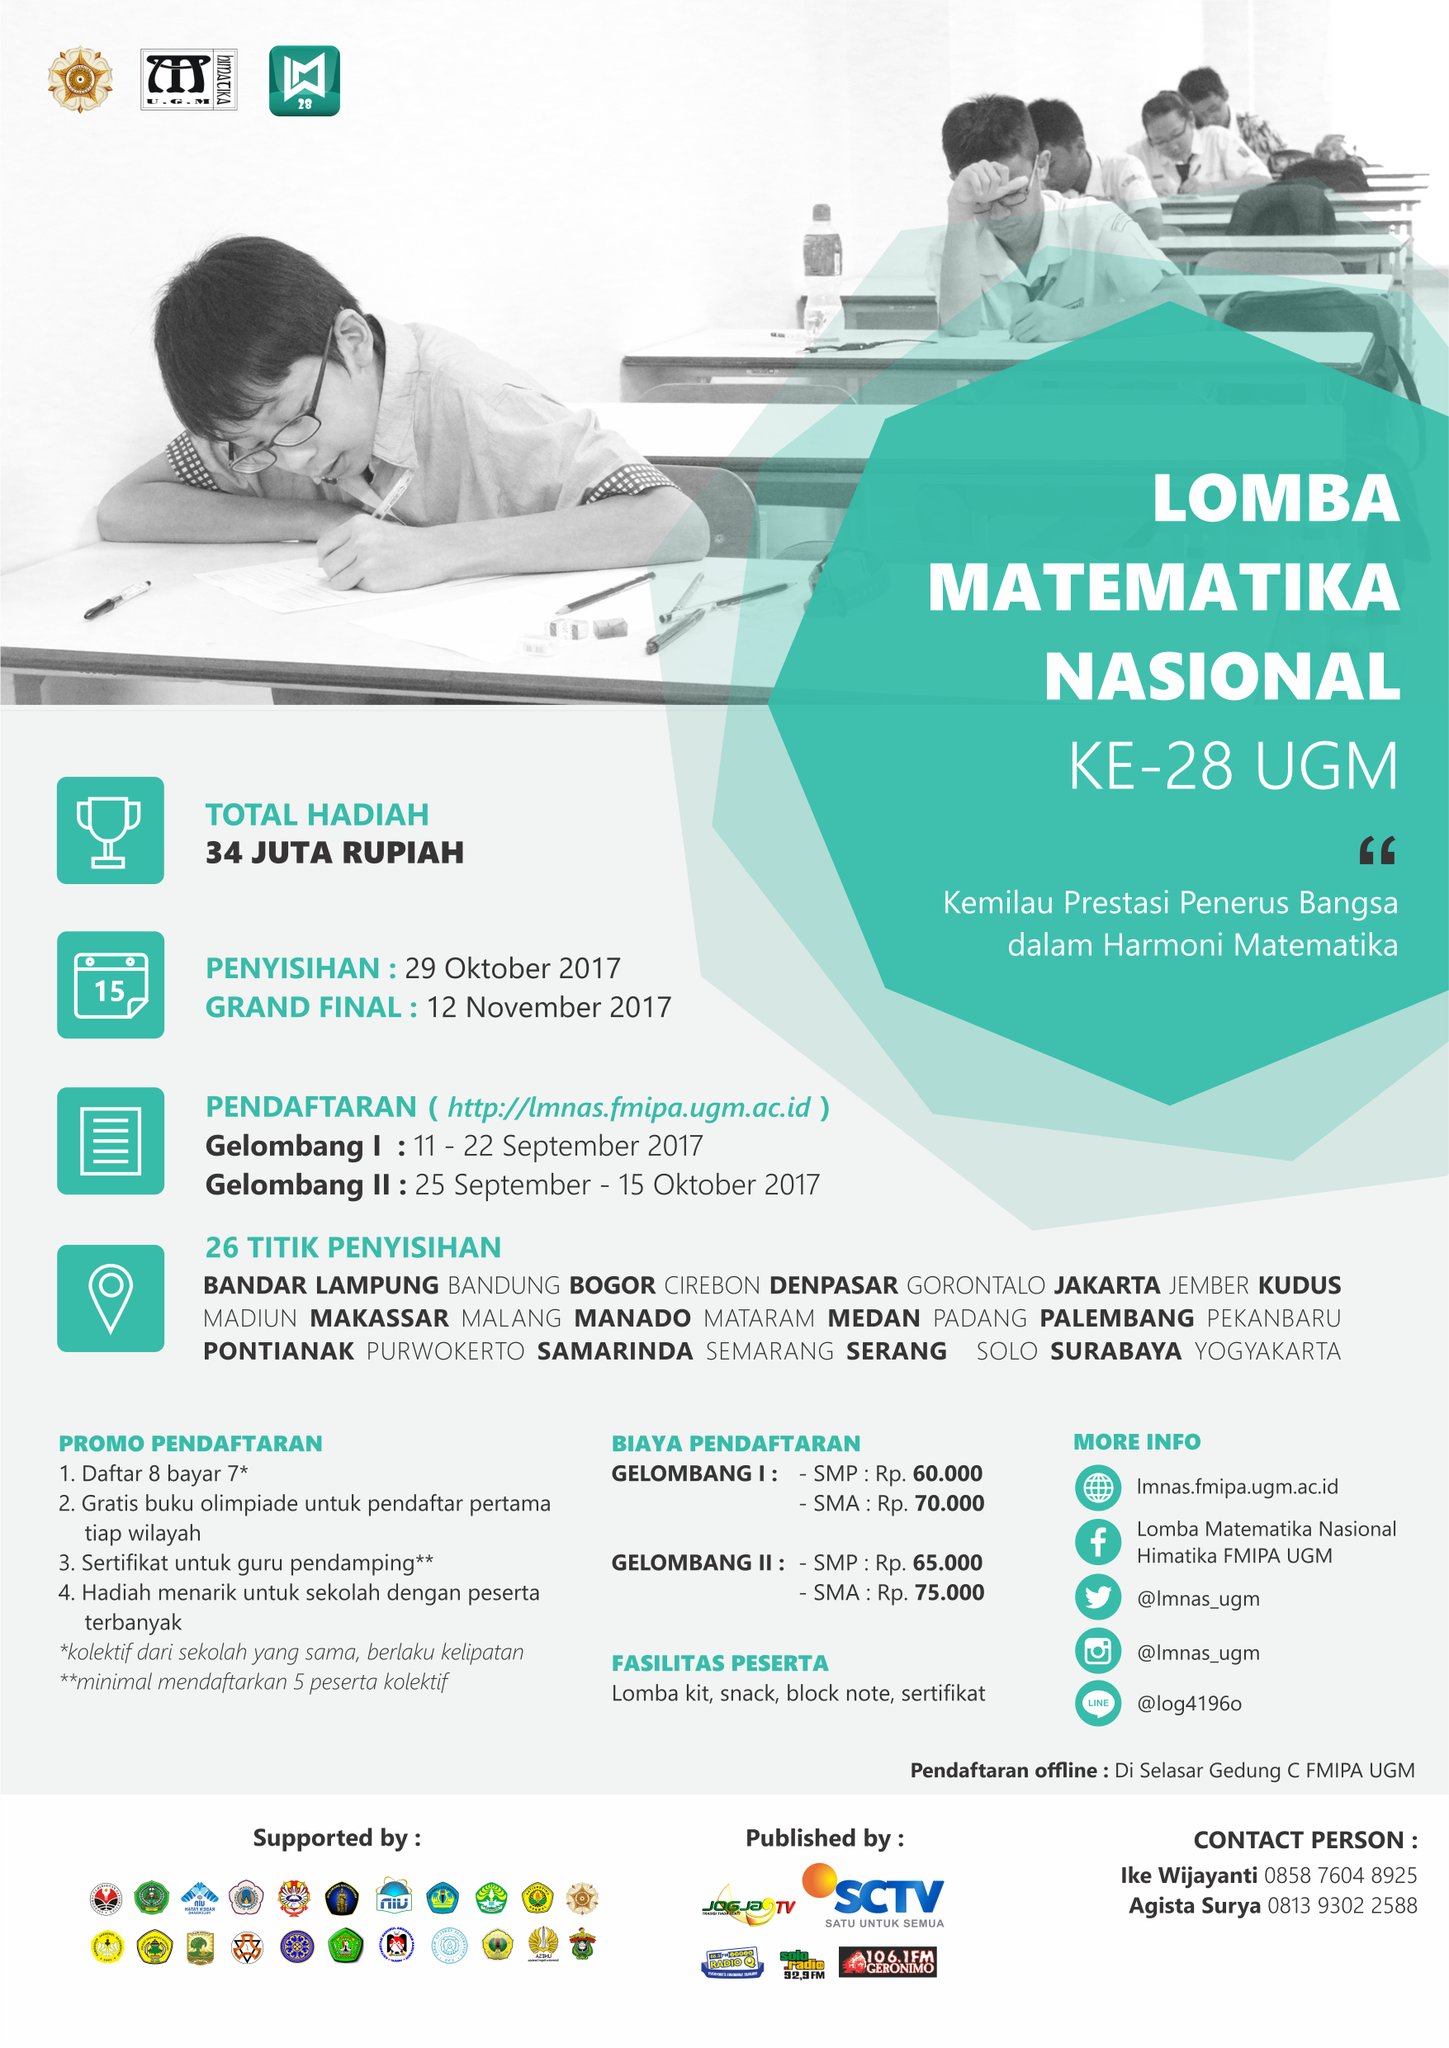 Lomba Matematika Nasional ke 28 UGM 2017 Lomba Matematika LM Universitas Gadjah Mada pertama kal… Read More